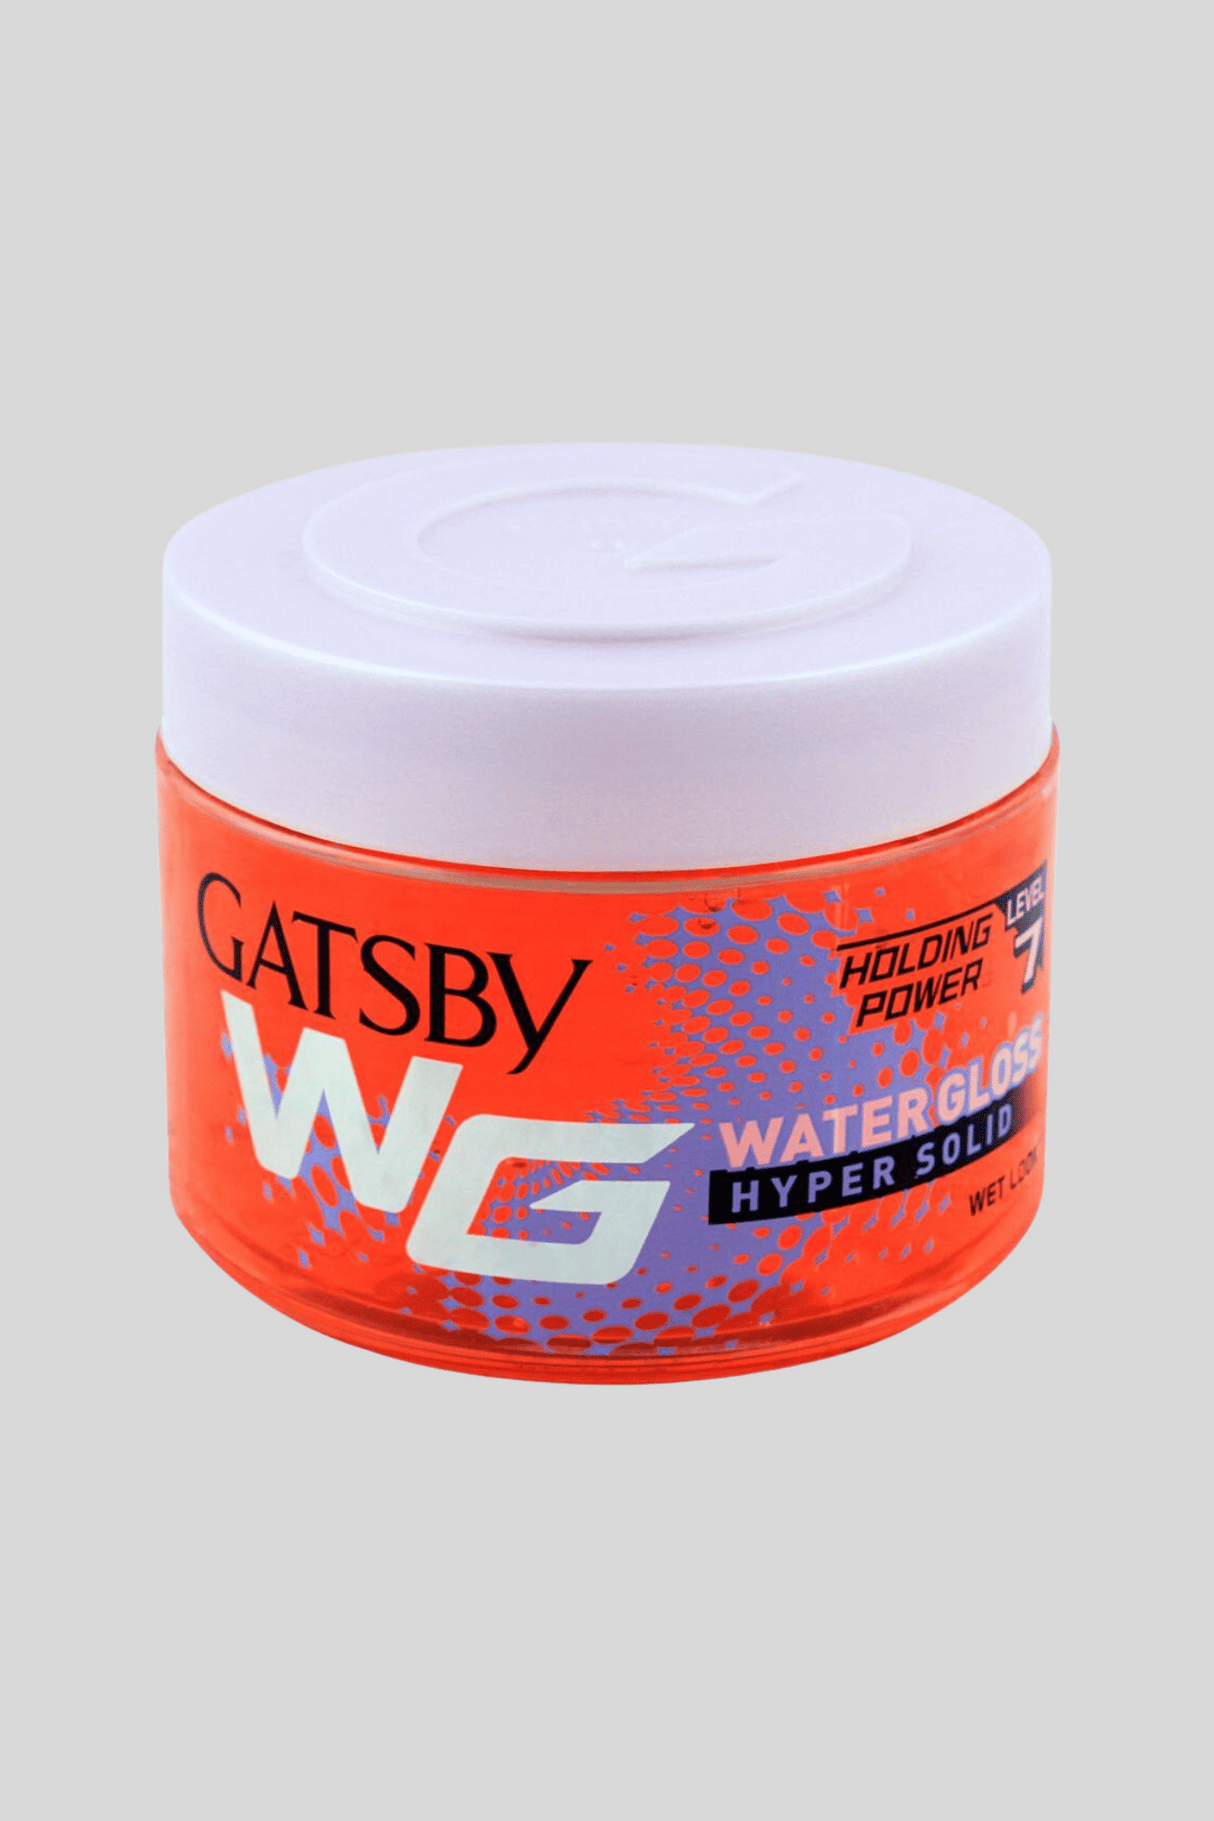 gatsby hair gel water gloss hyper solid 300g